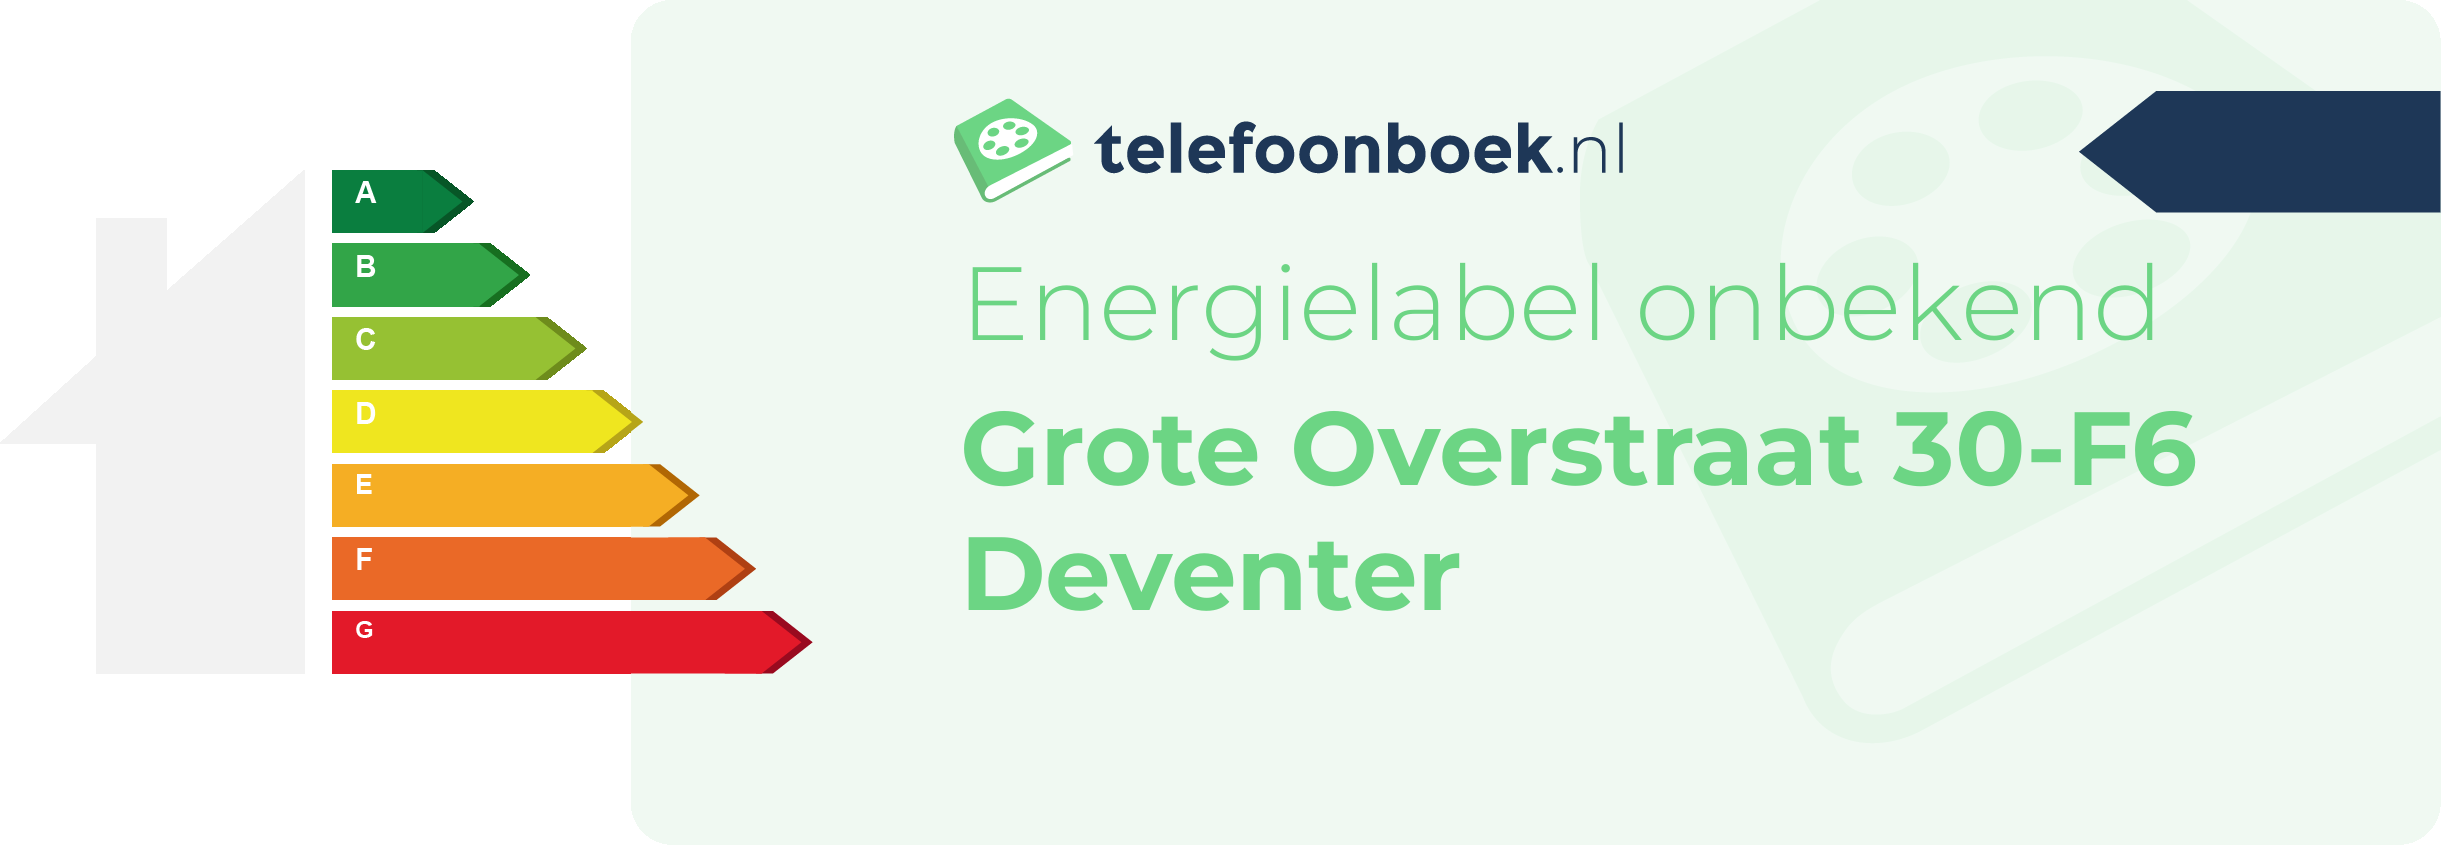 Energielabel Grote Overstraat 30-F6 Deventer